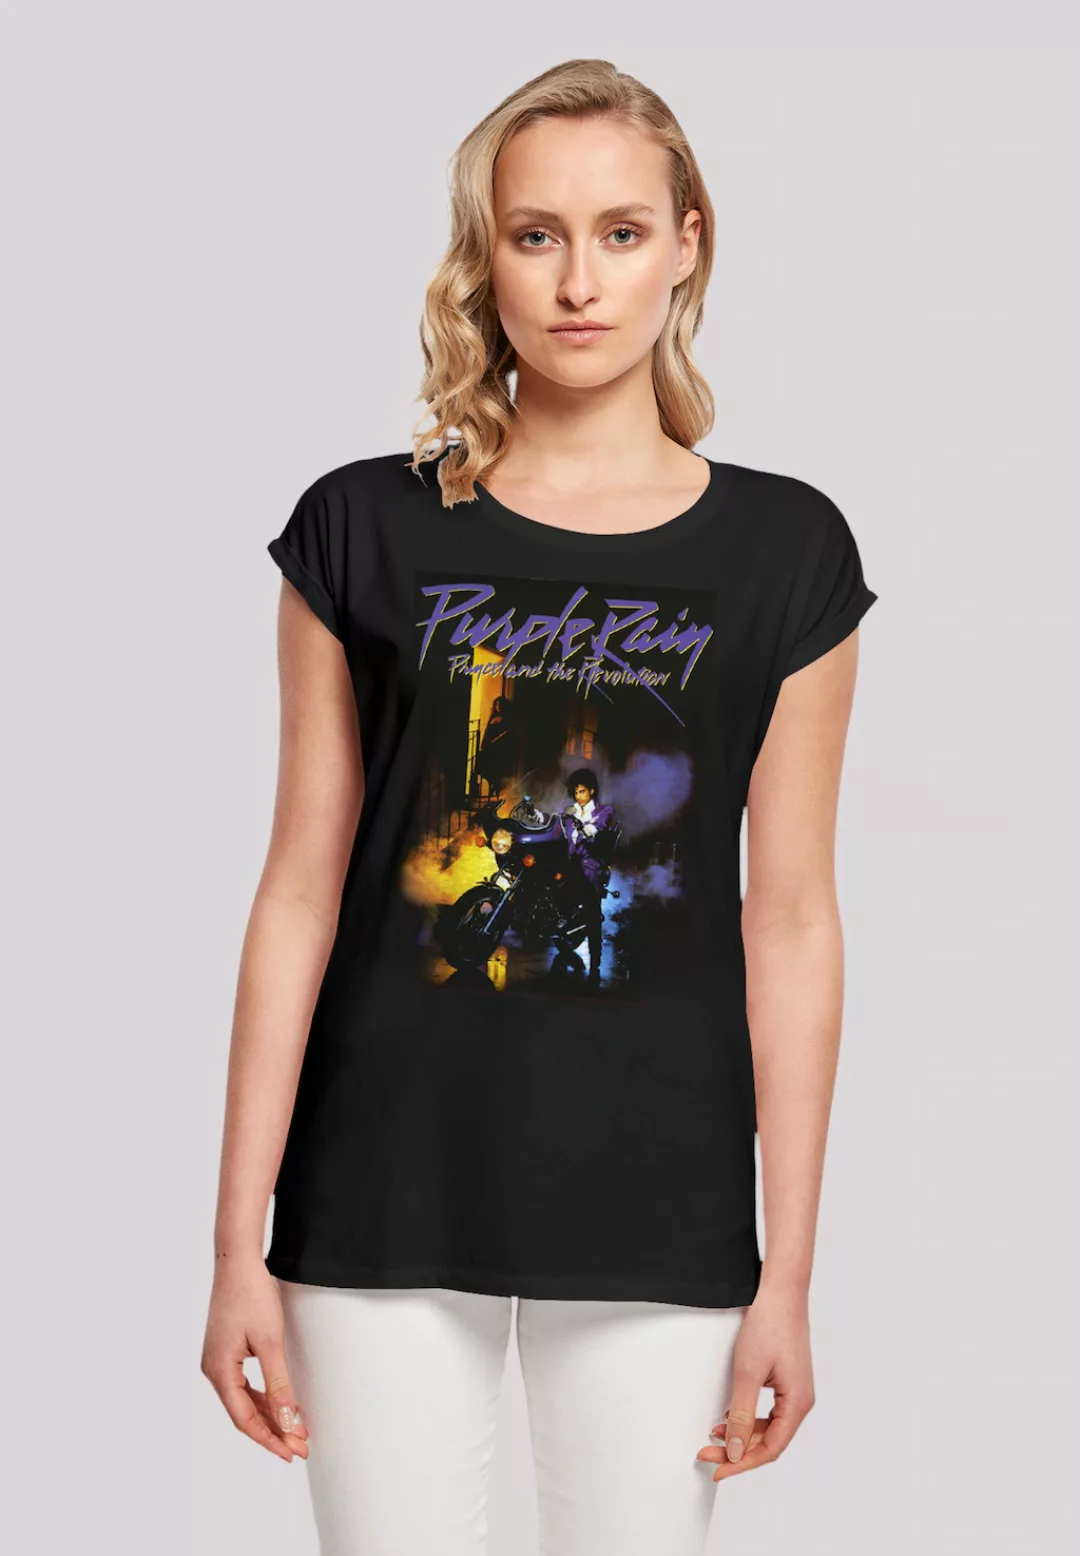 F4NT4STIC T-Shirt "Prince Musik Purple Rain", Premium Qualität, Rock-Musik, günstig online kaufen